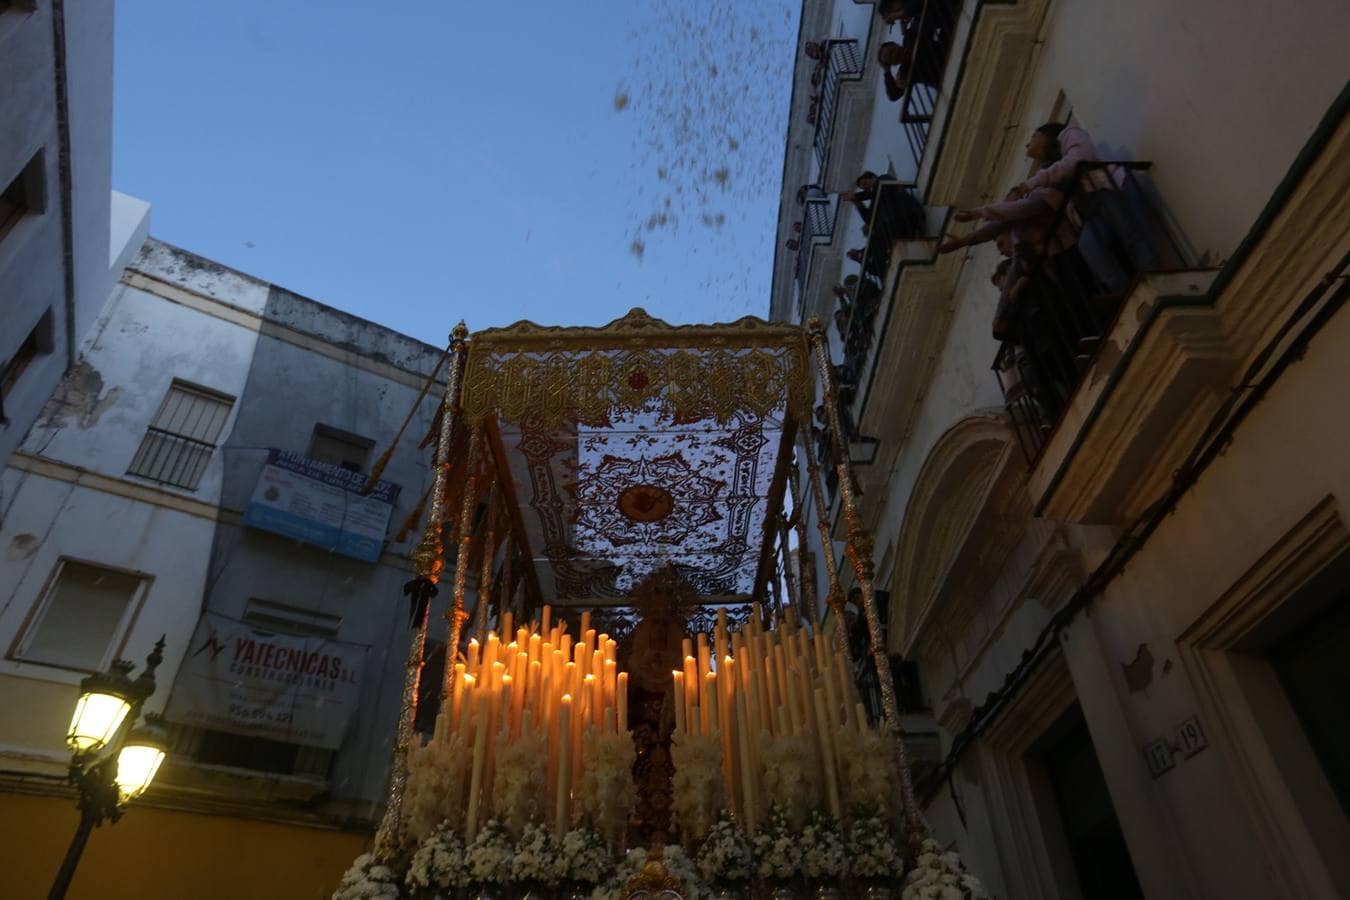 FOTOS: Nazareno de Santa María en la Semana Santa de Cádiz 2018